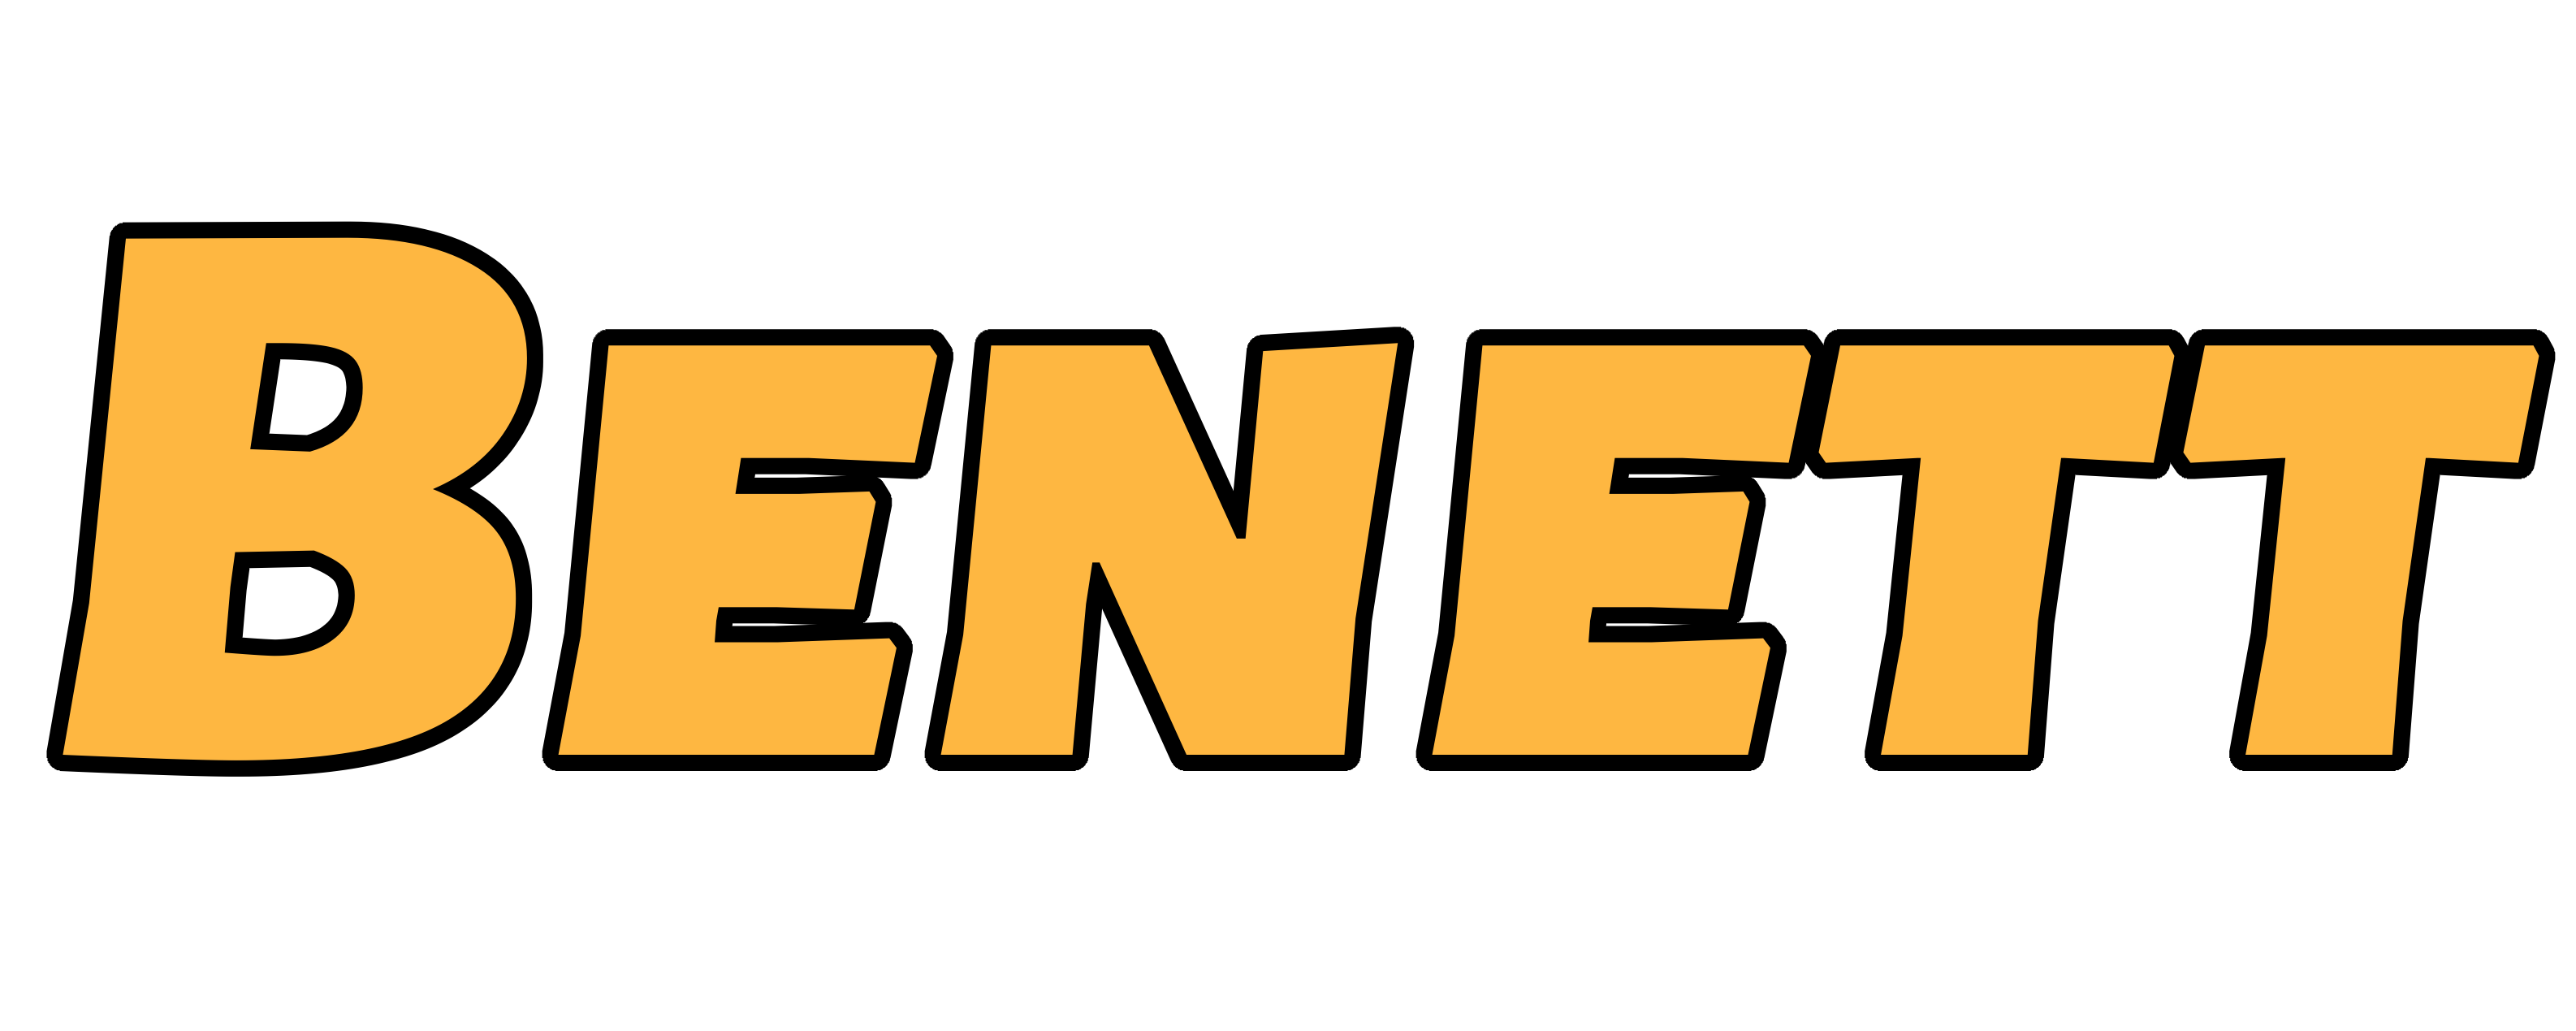 Benett logo. Free logo maker.